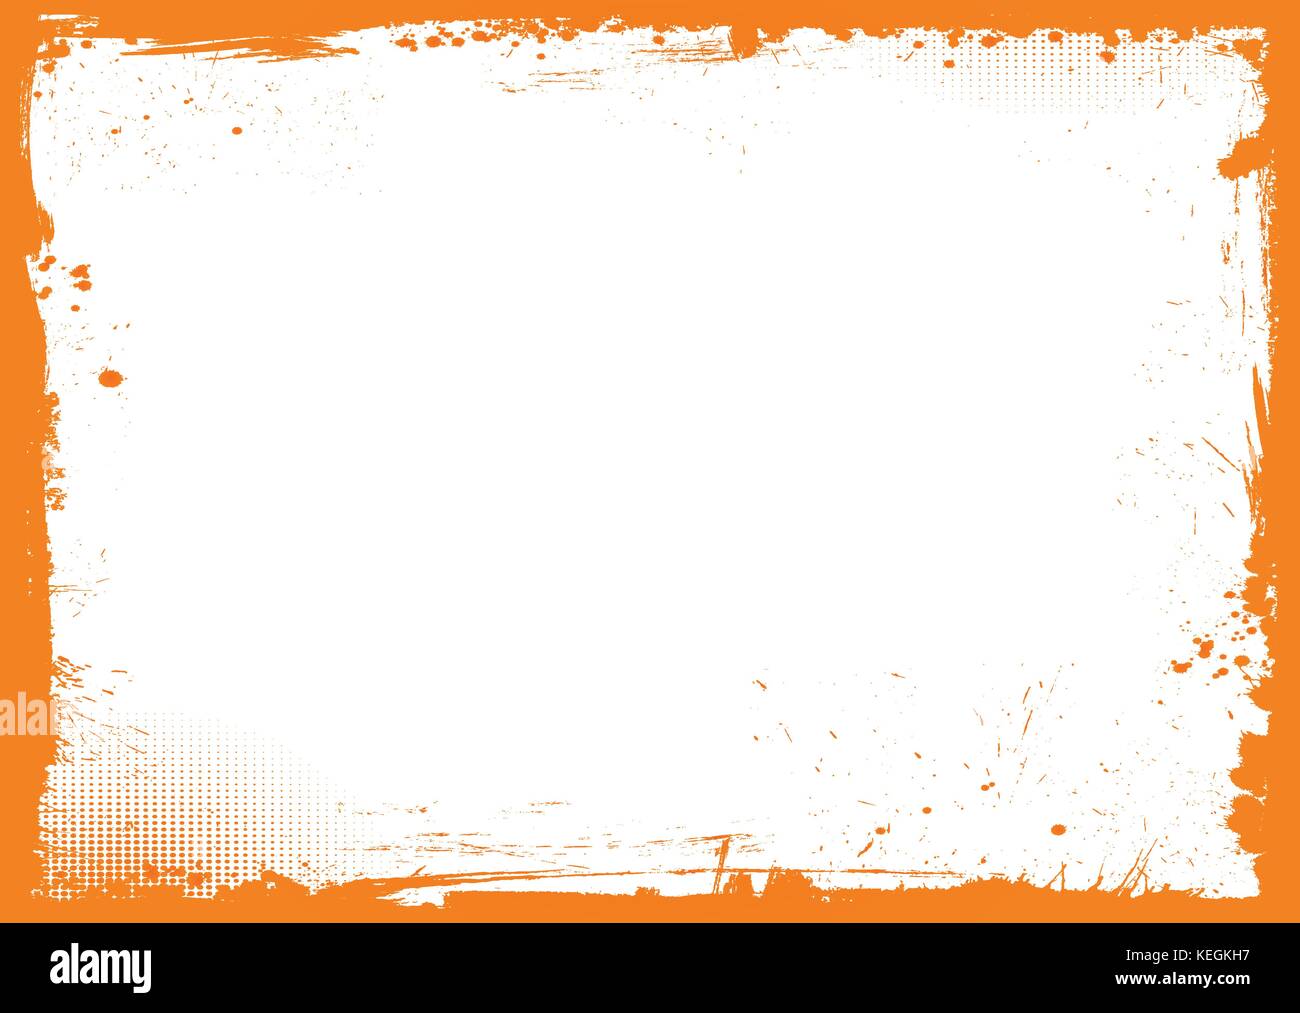 L'horizontale orange et blanc avec fond frontière grunge halloween Illustration de Vecteur